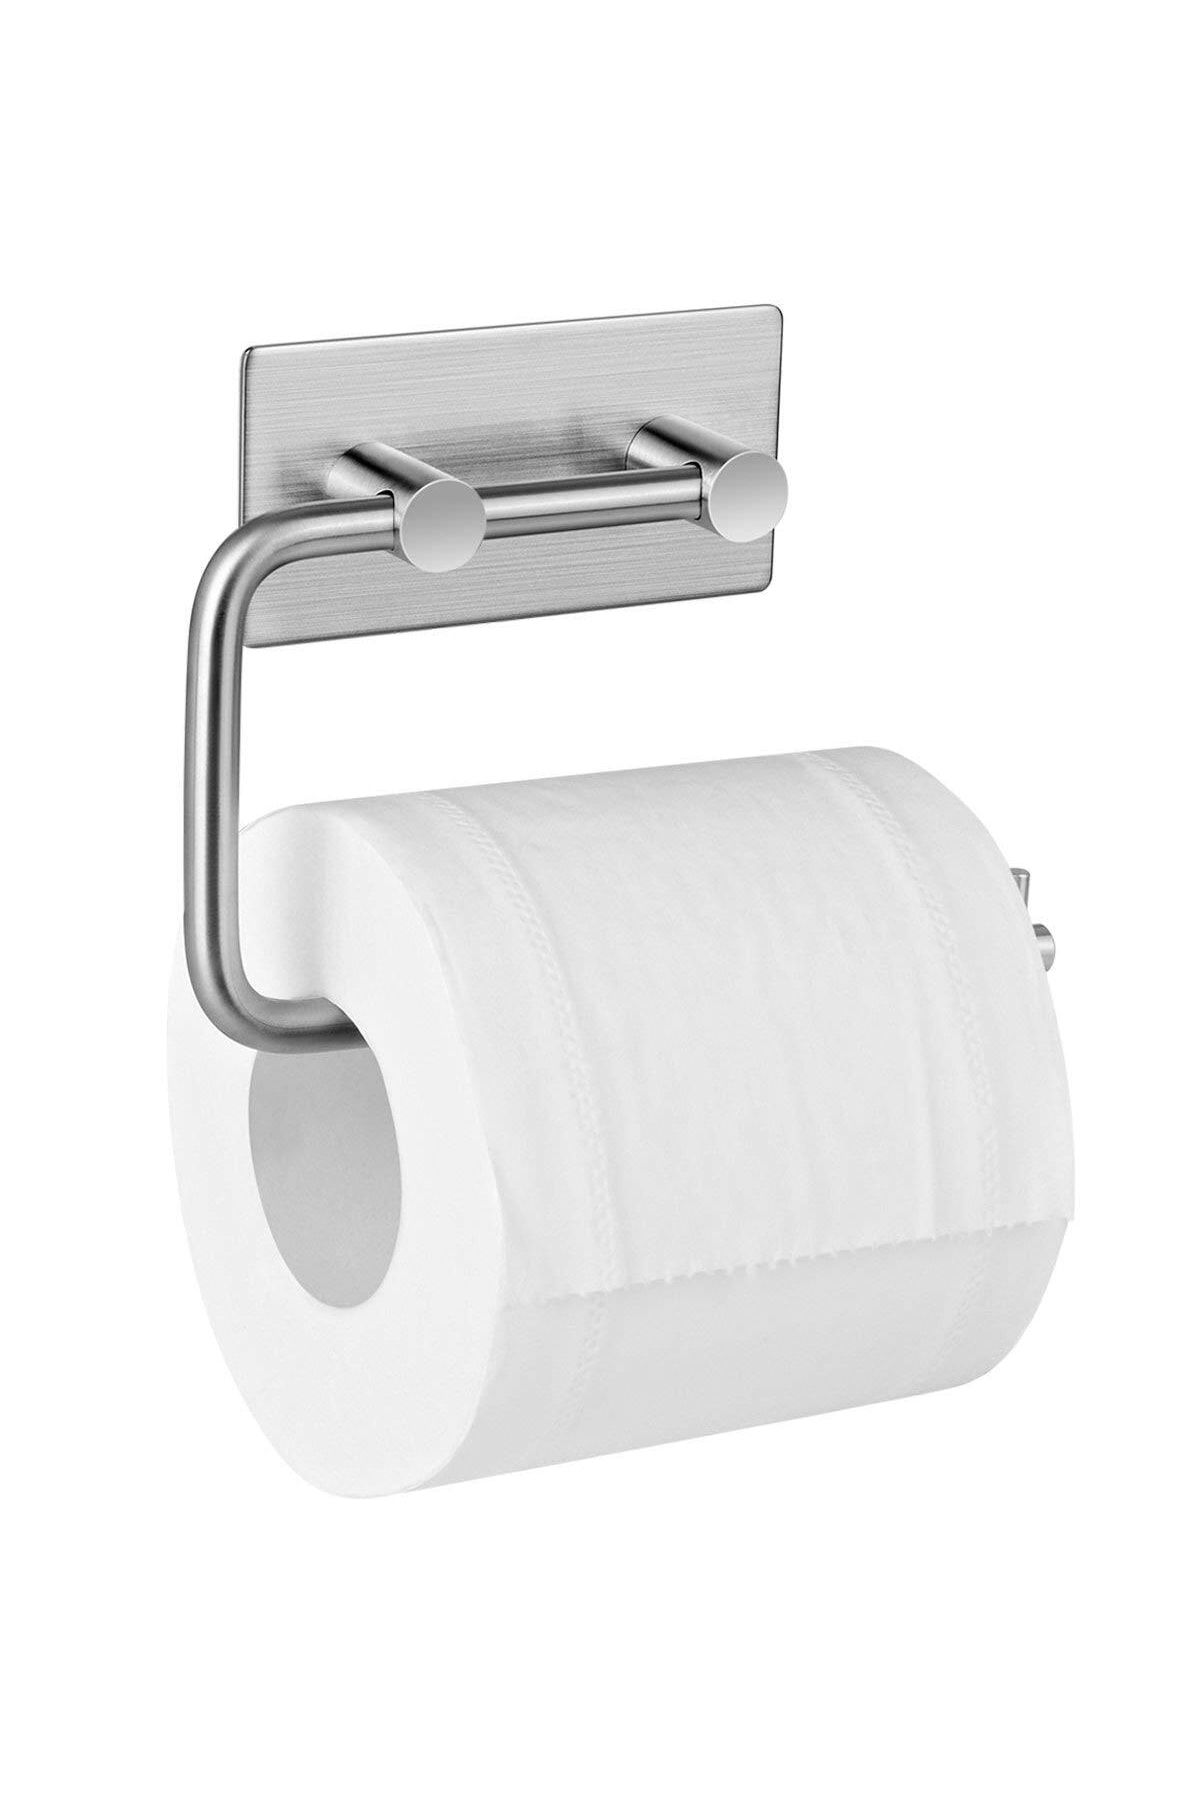 DELTAHOME Paslanmaz Çelik Yapışkanlı Tuvalet Kağıtlığı - Anında Kolay Montaj - Vida Yok